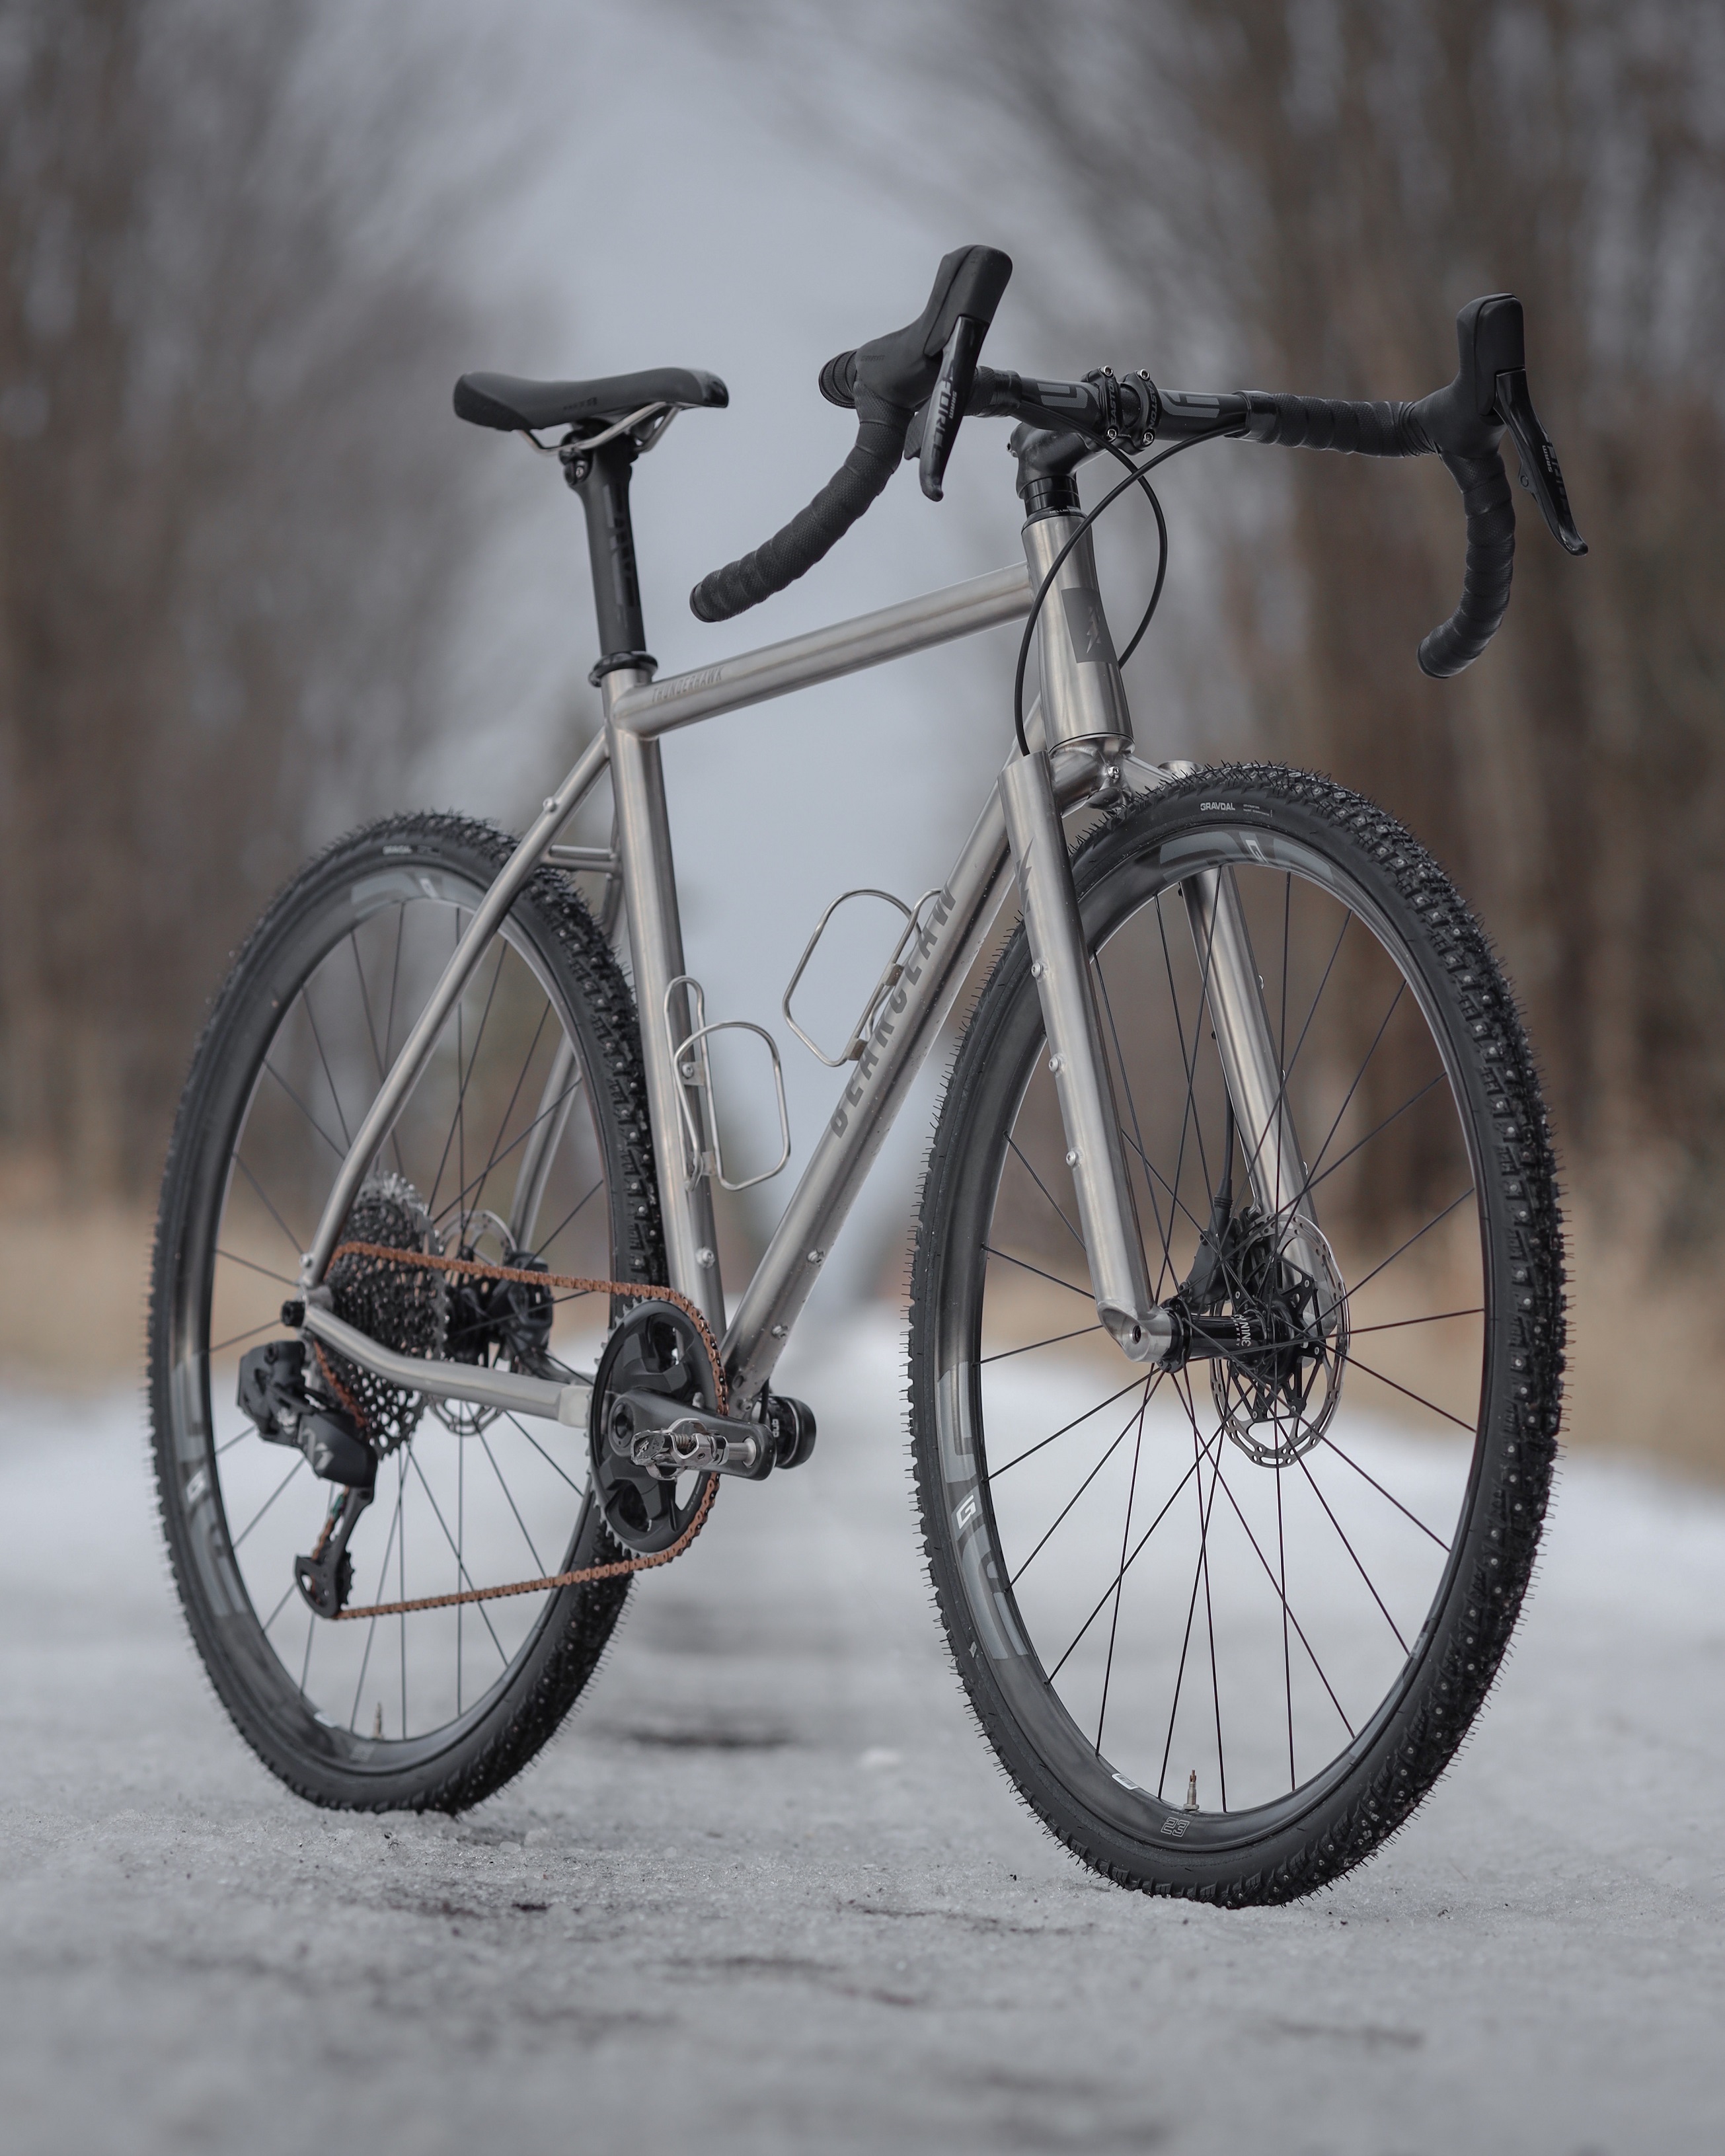 Ice Road Gravel Bike with Gravdal Studded Tires